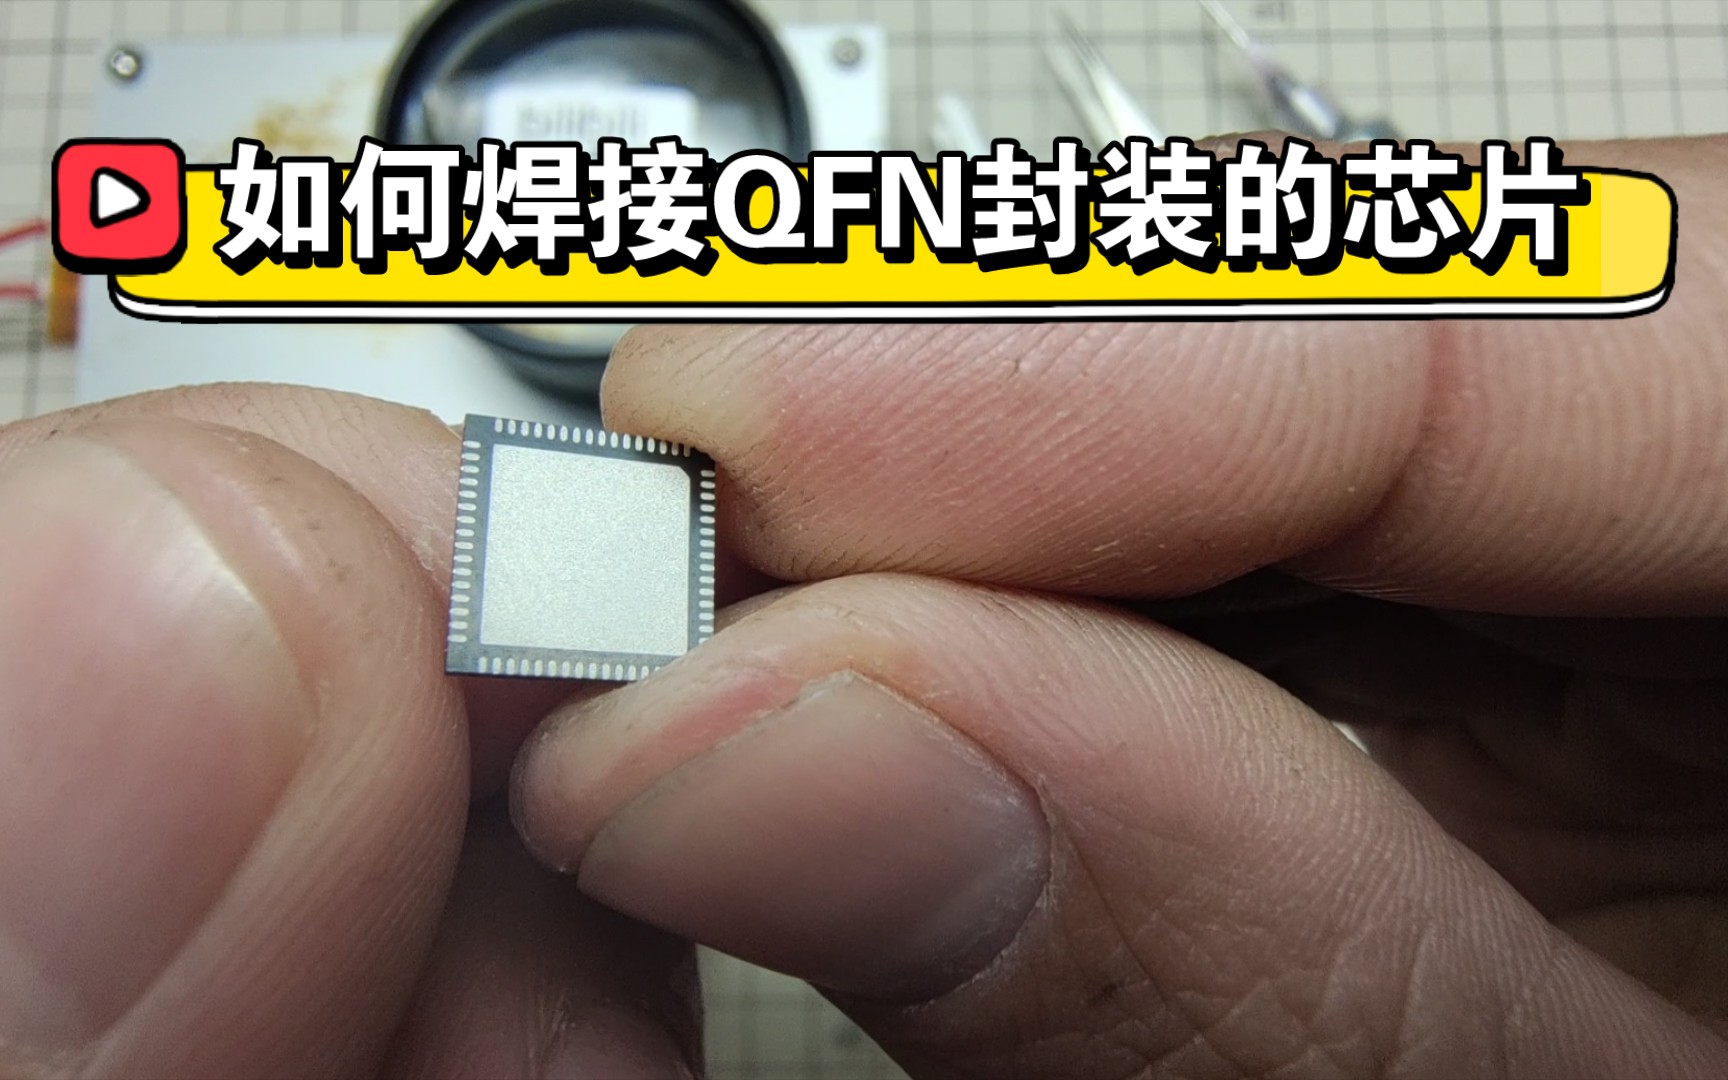 用加热台焊接QFN封装芯片